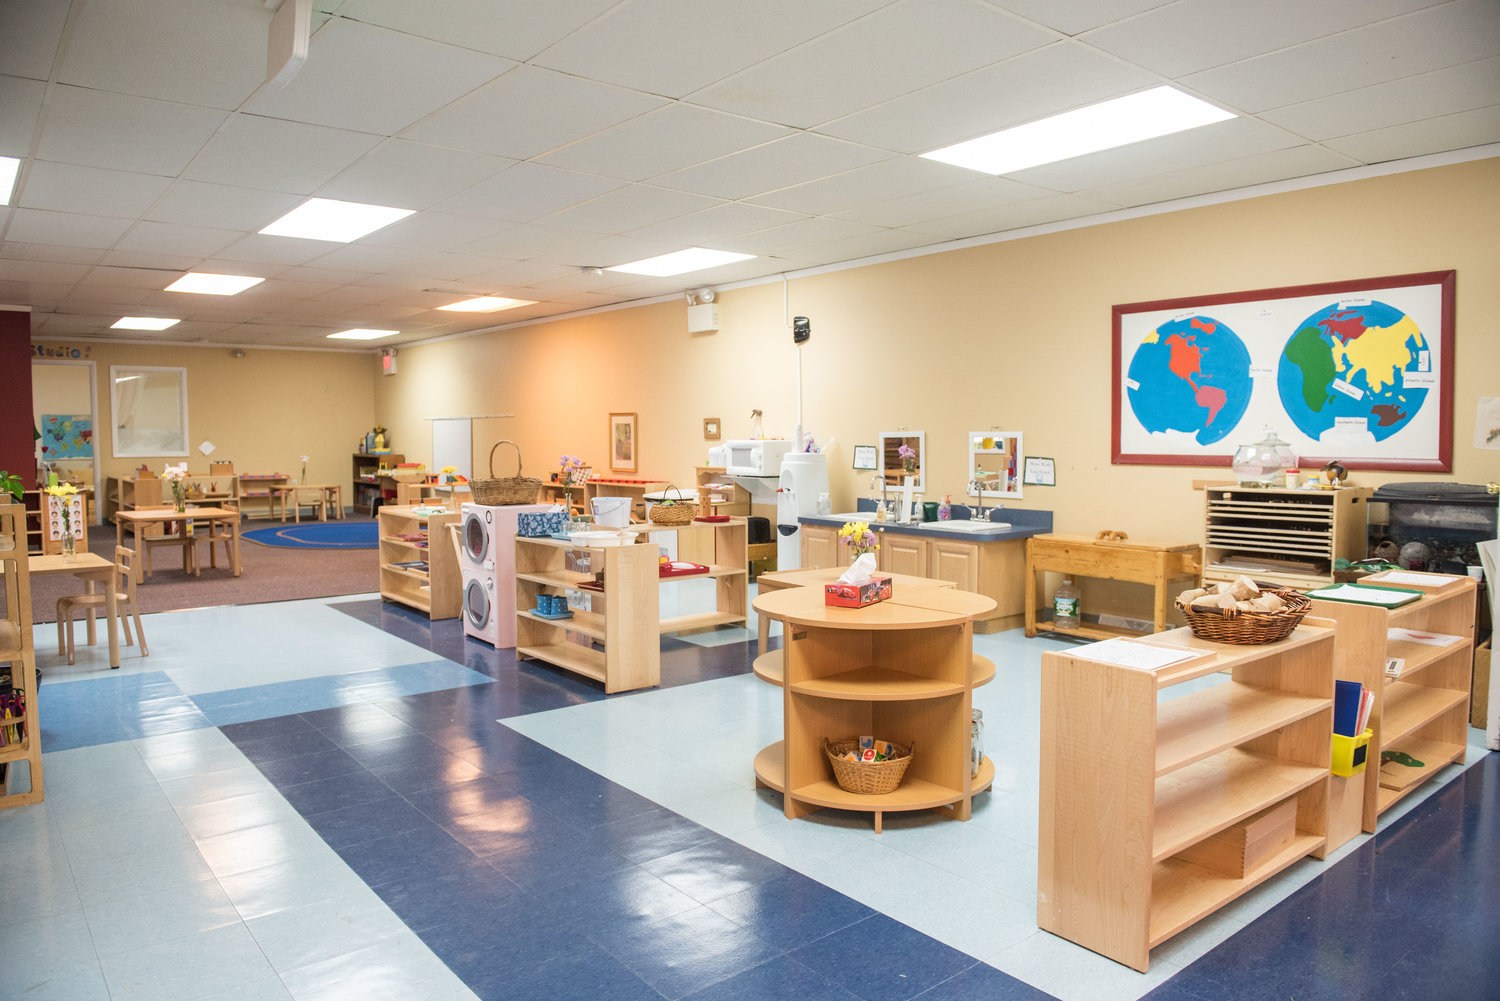 5 điều nên biết về các trường Montessori - Táo Trường học